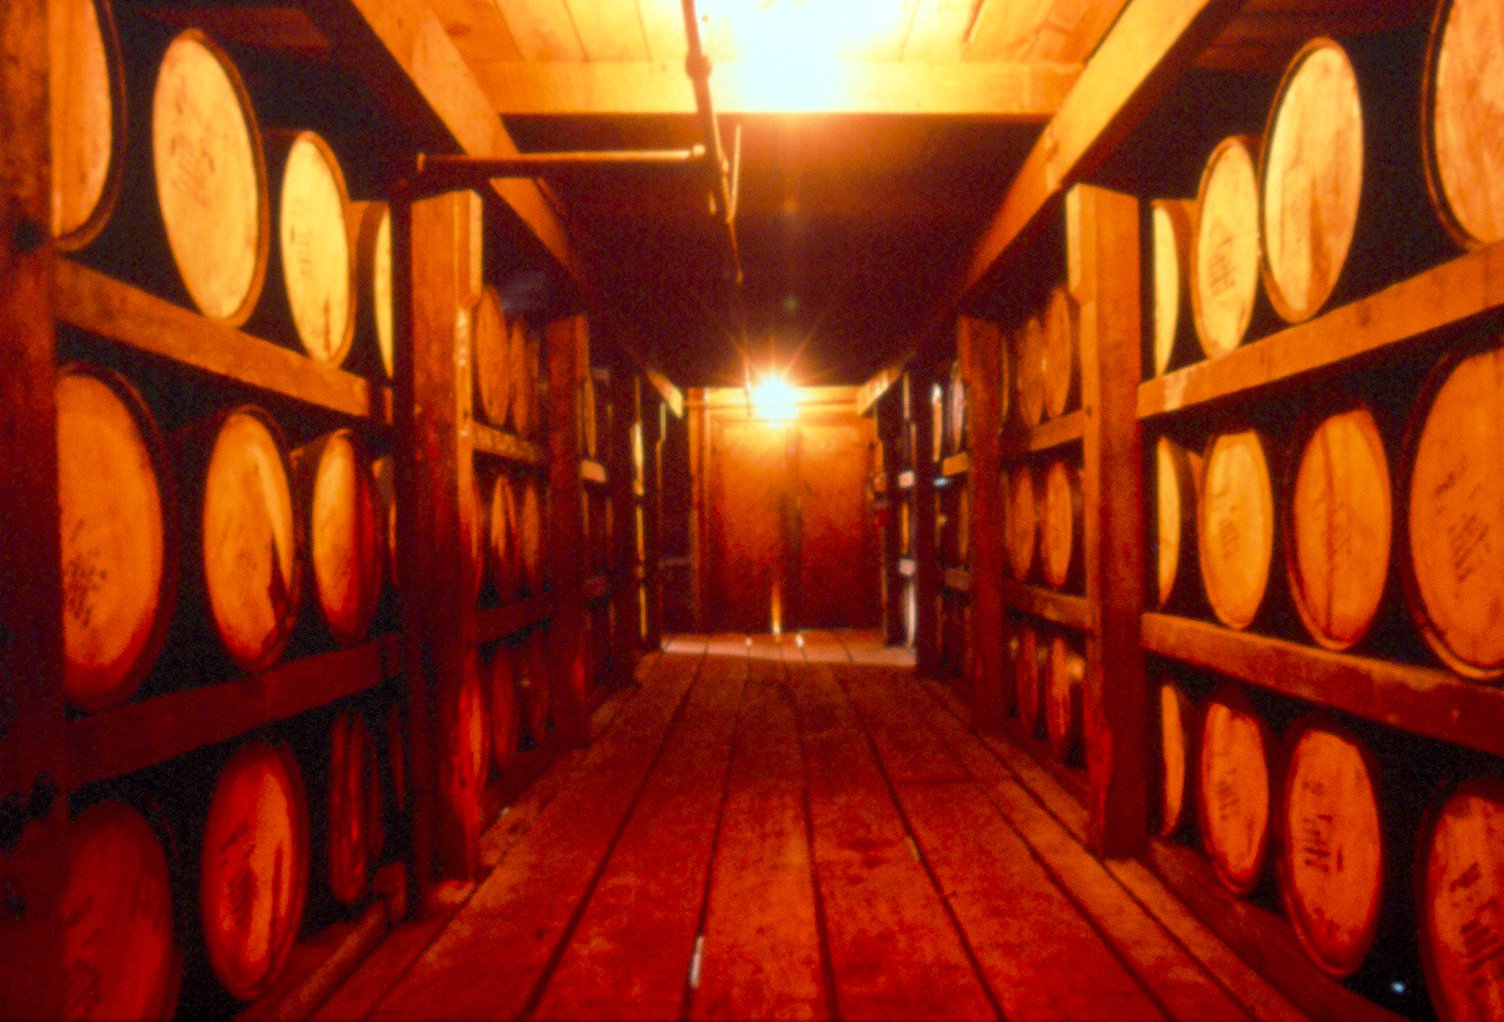 Bourbon barrels aging